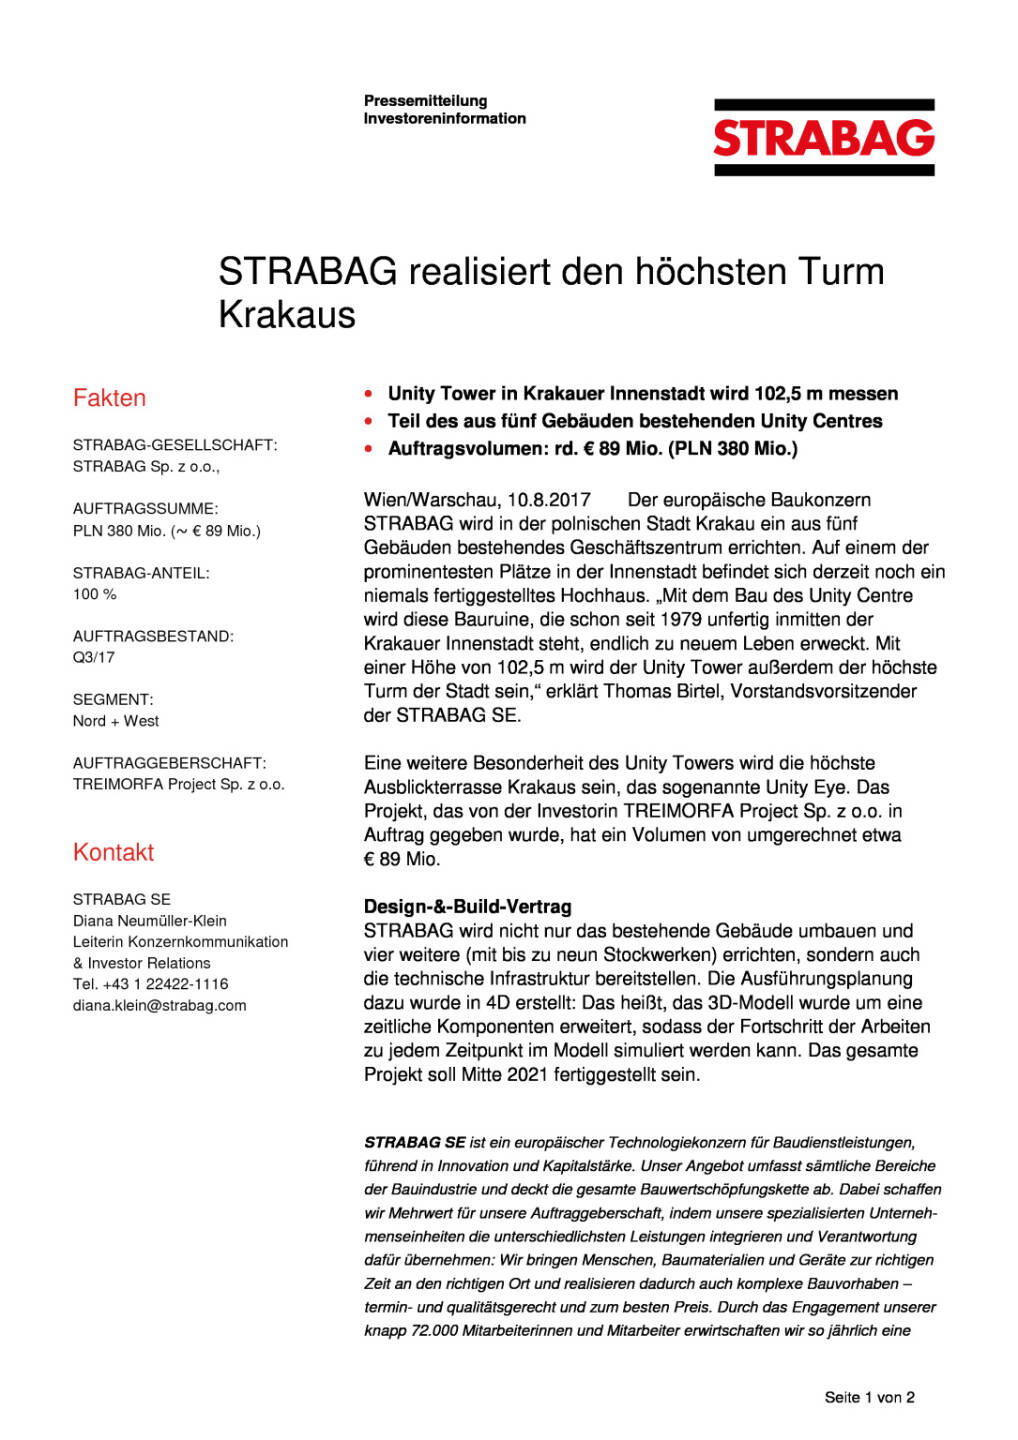 Strabag realisiert den höchsten Turm Krakaus, Seite 1/2, komplettes Dokument unter http://boerse-social.com/static/uploads/file_2308_strabag_realisiert_den_hochsten_turm_krakaus.pdf